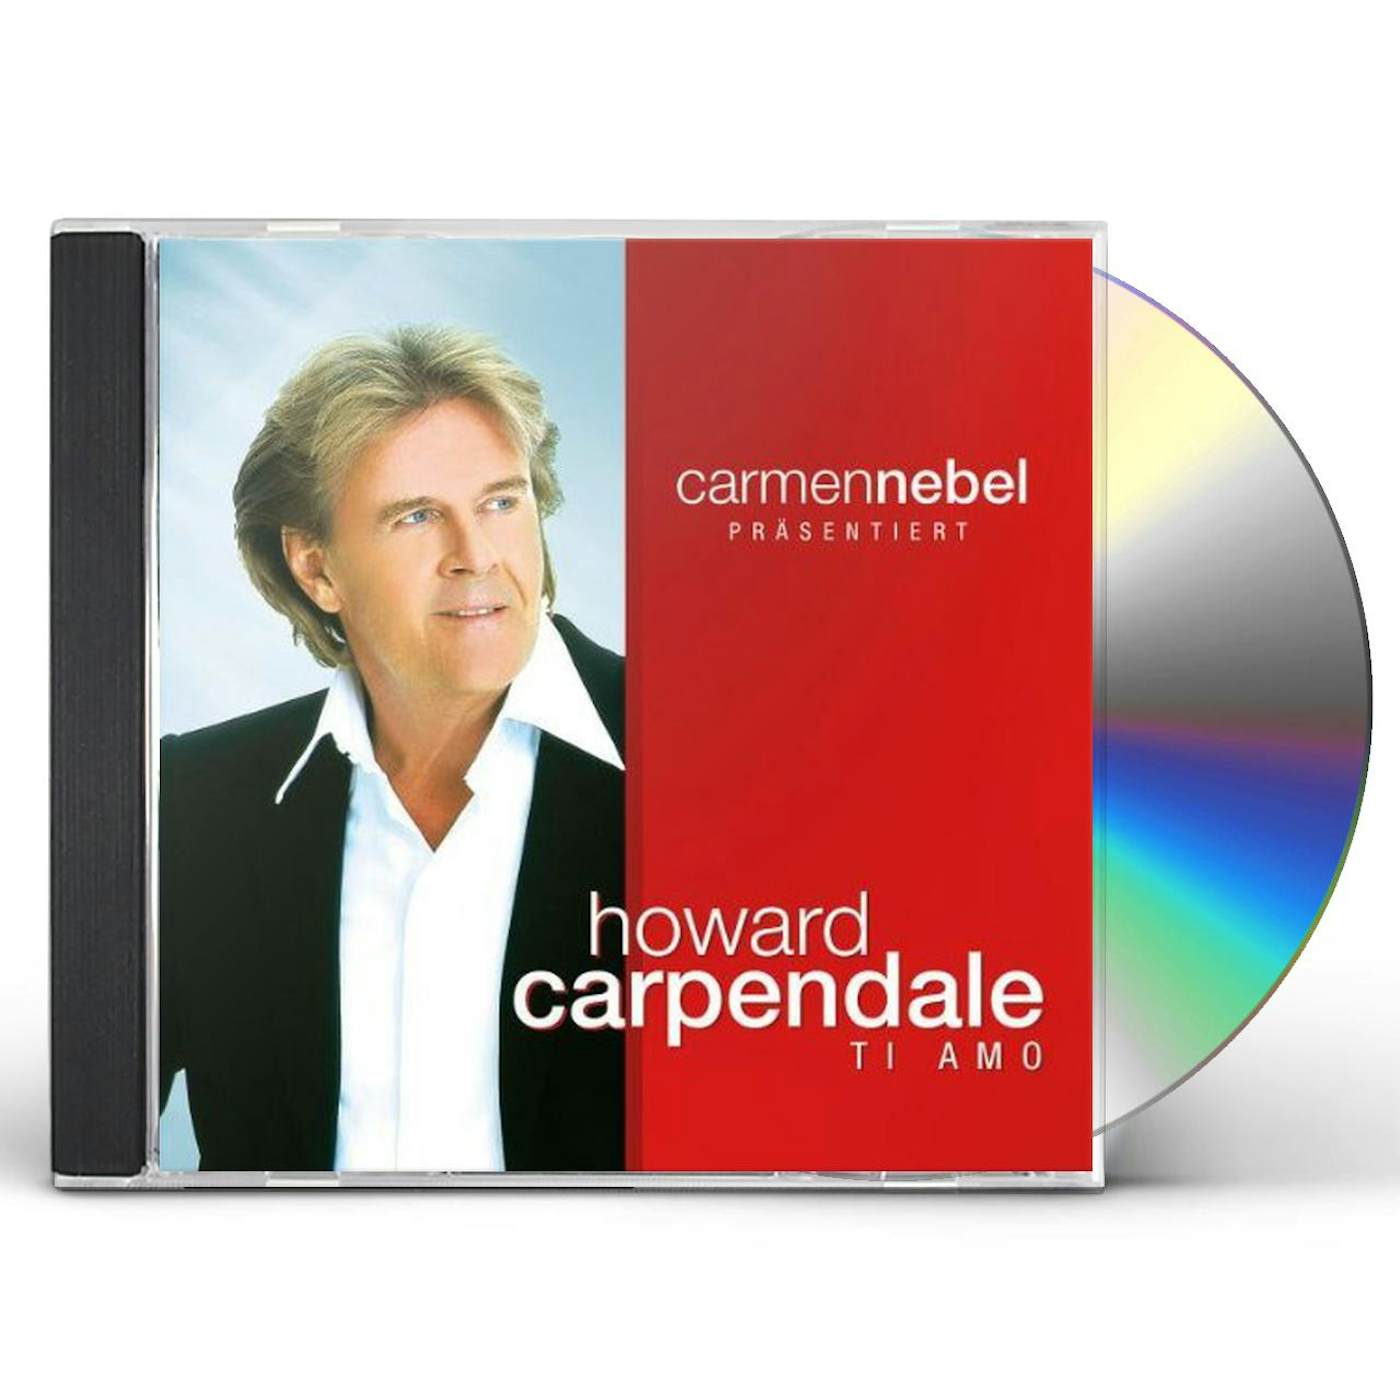 CARMEN NEBEL PRAES.HOWARD CARPENDALE CD